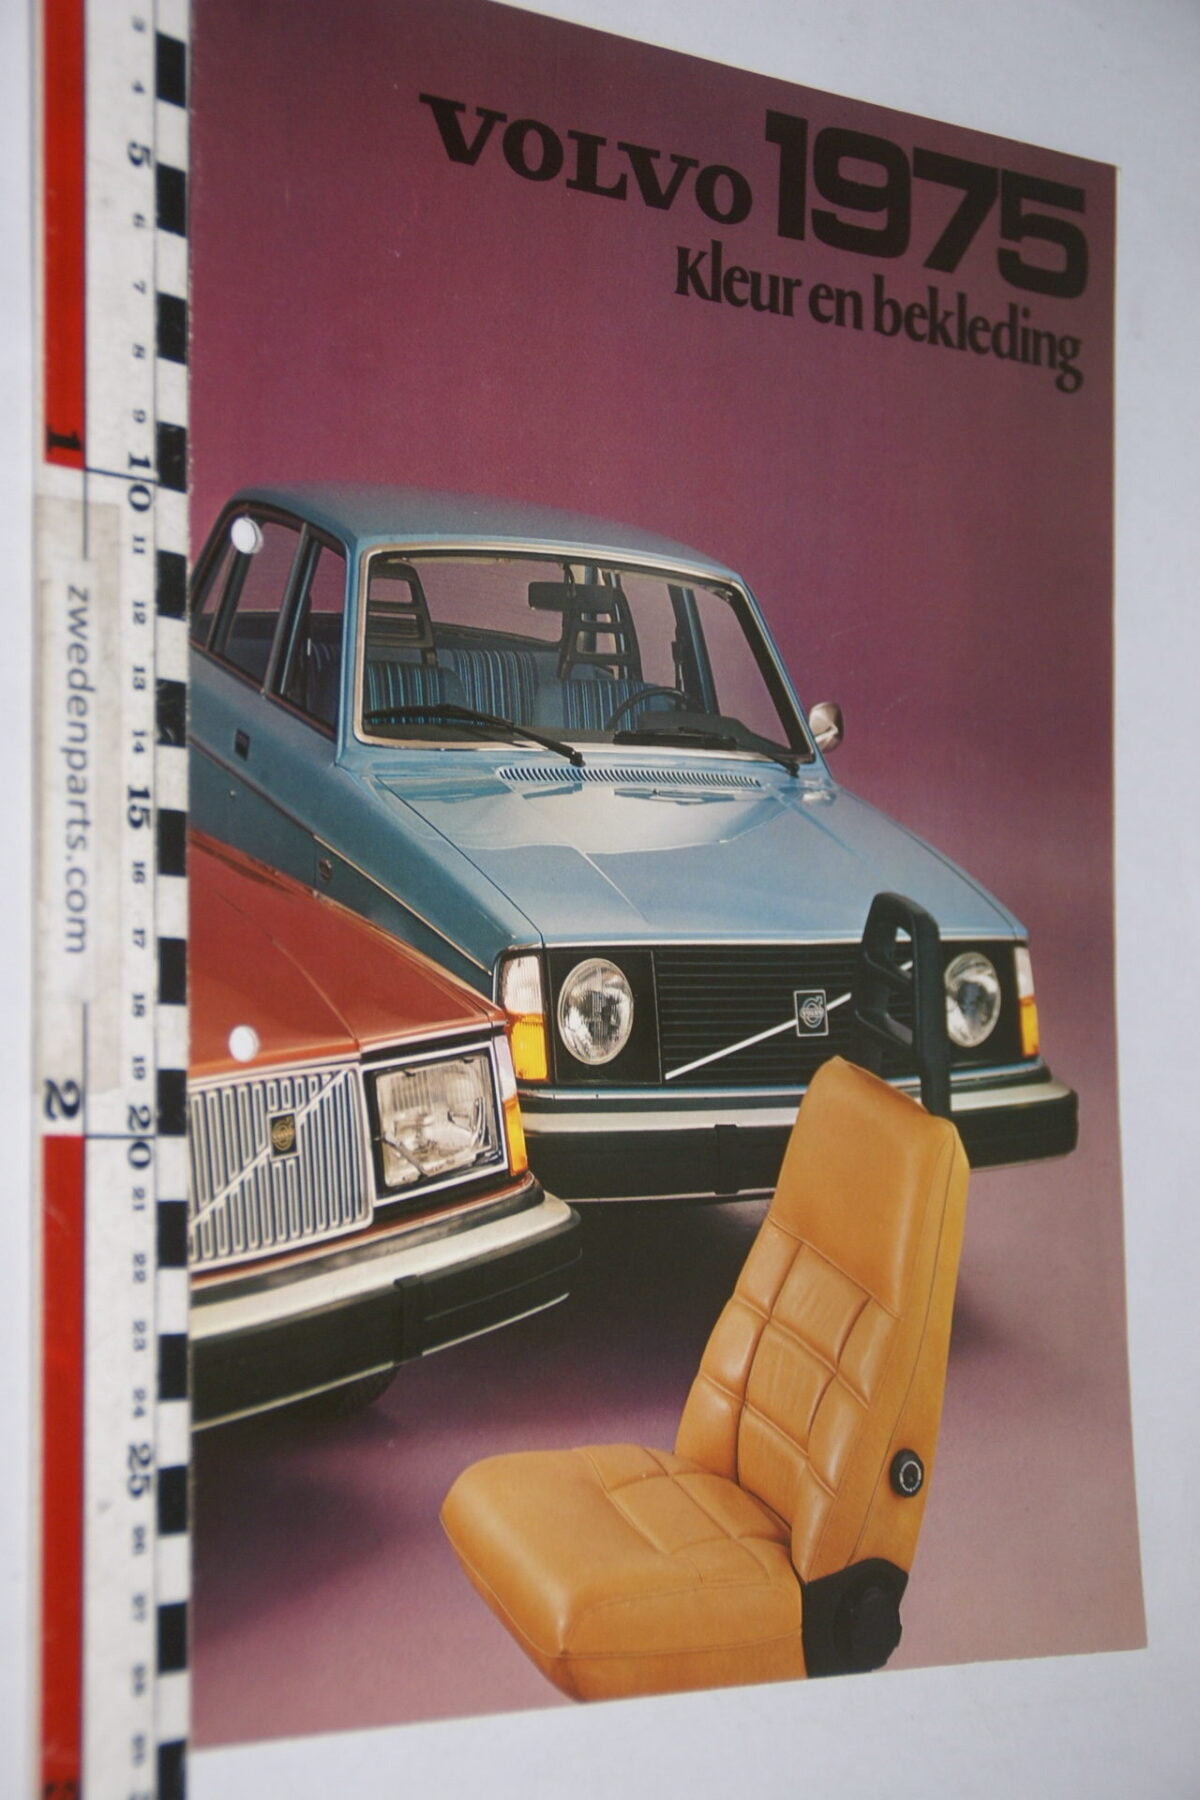 DSC07936 1975 brochure Volvo 200 kleur en bekleding nr RSPPV 1940